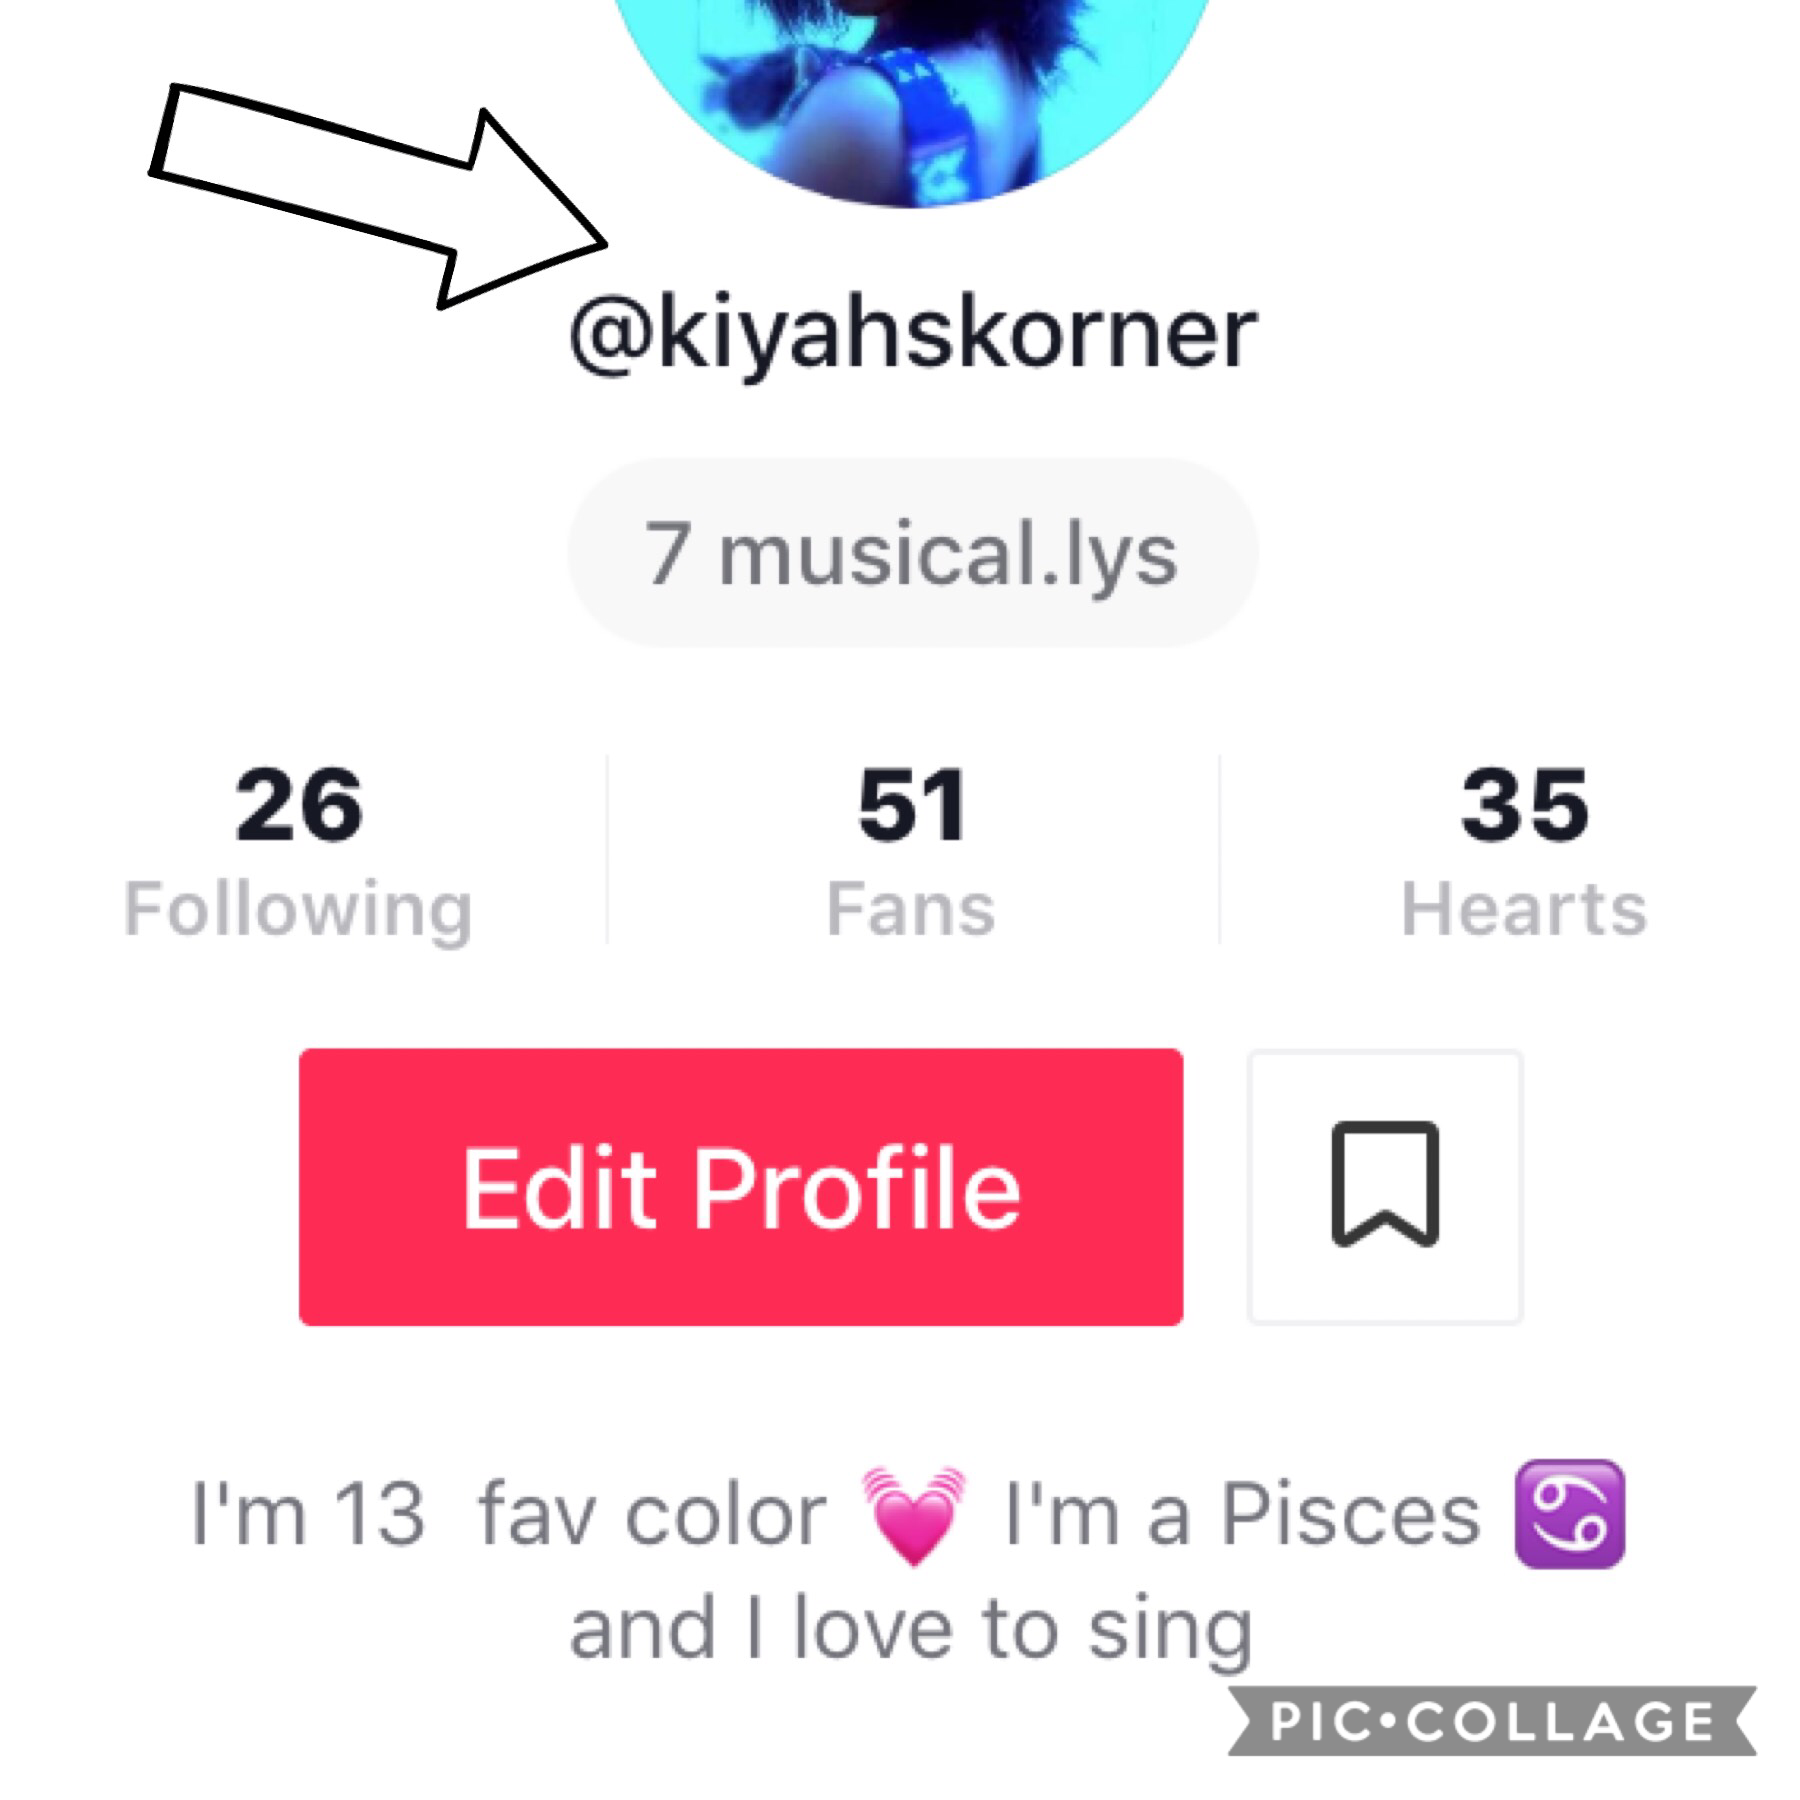 Go follow me on musically 